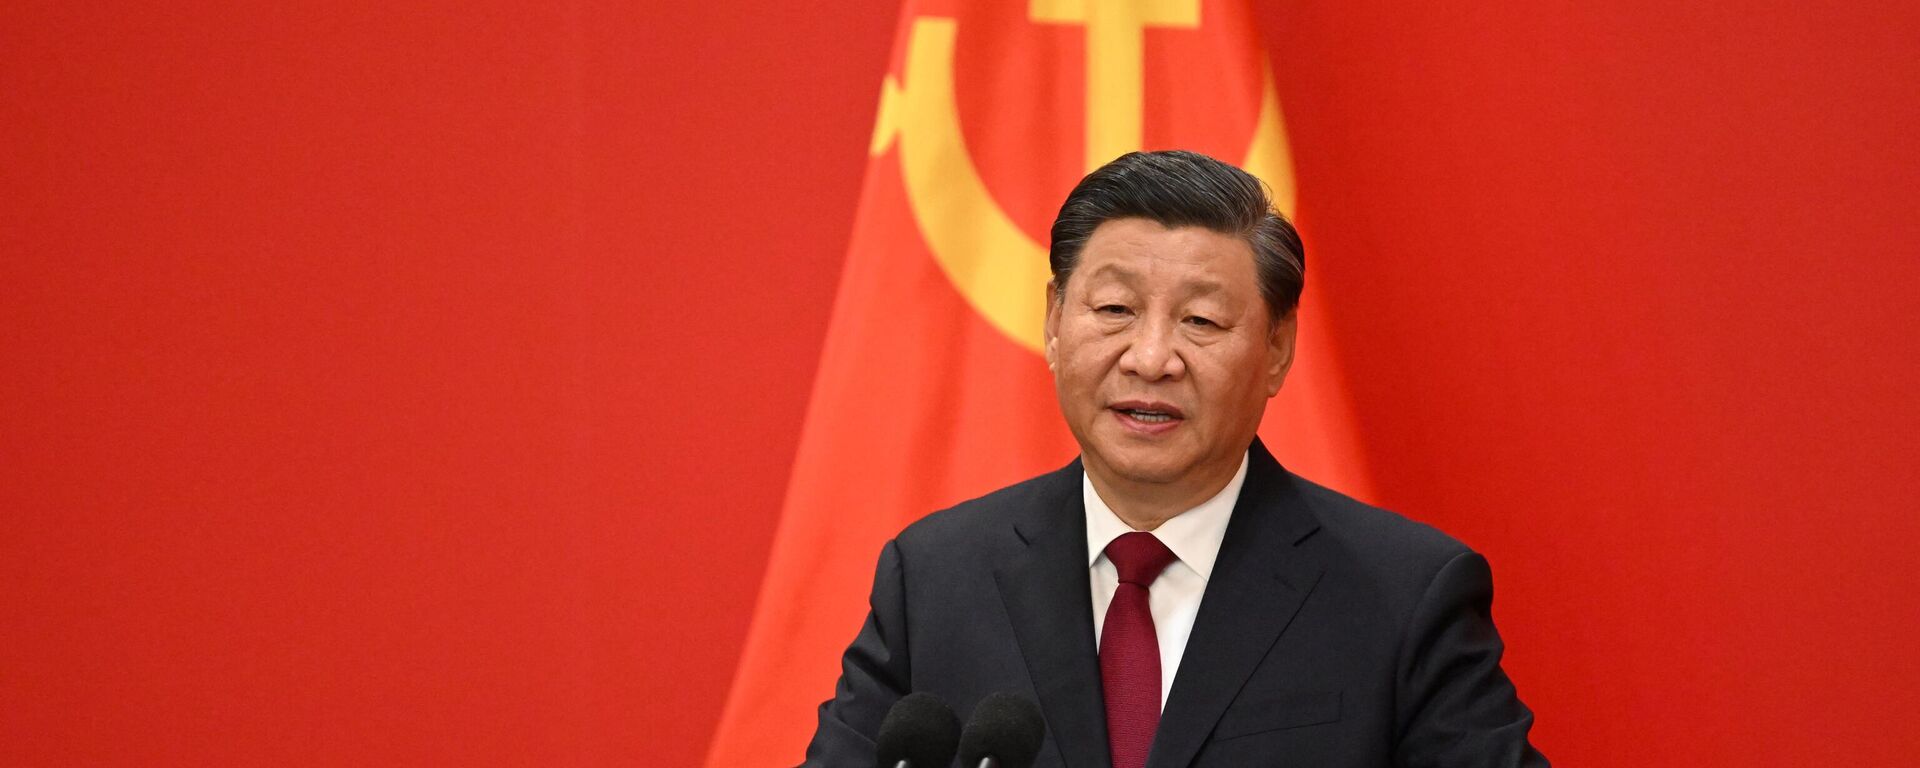 El presidente de China, Xi Jinping, habla durante el Comité Permanente del Politburó del Partido Comunista Chino, el 23 de octubre de 2022.  - Sputnik Mundo, 1920, 18.03.2023